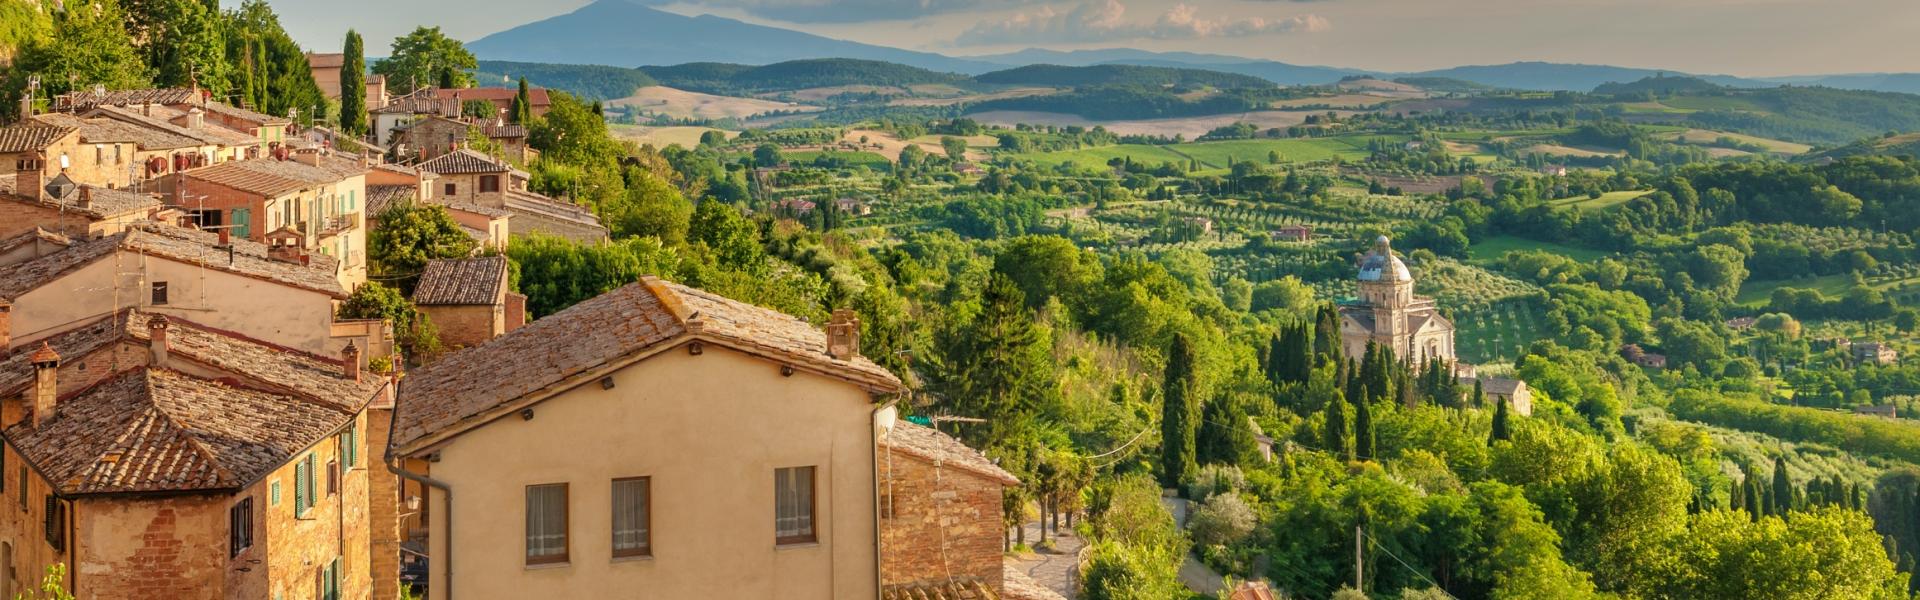 Prato (provincia) affittare case vacanze - Casamundo